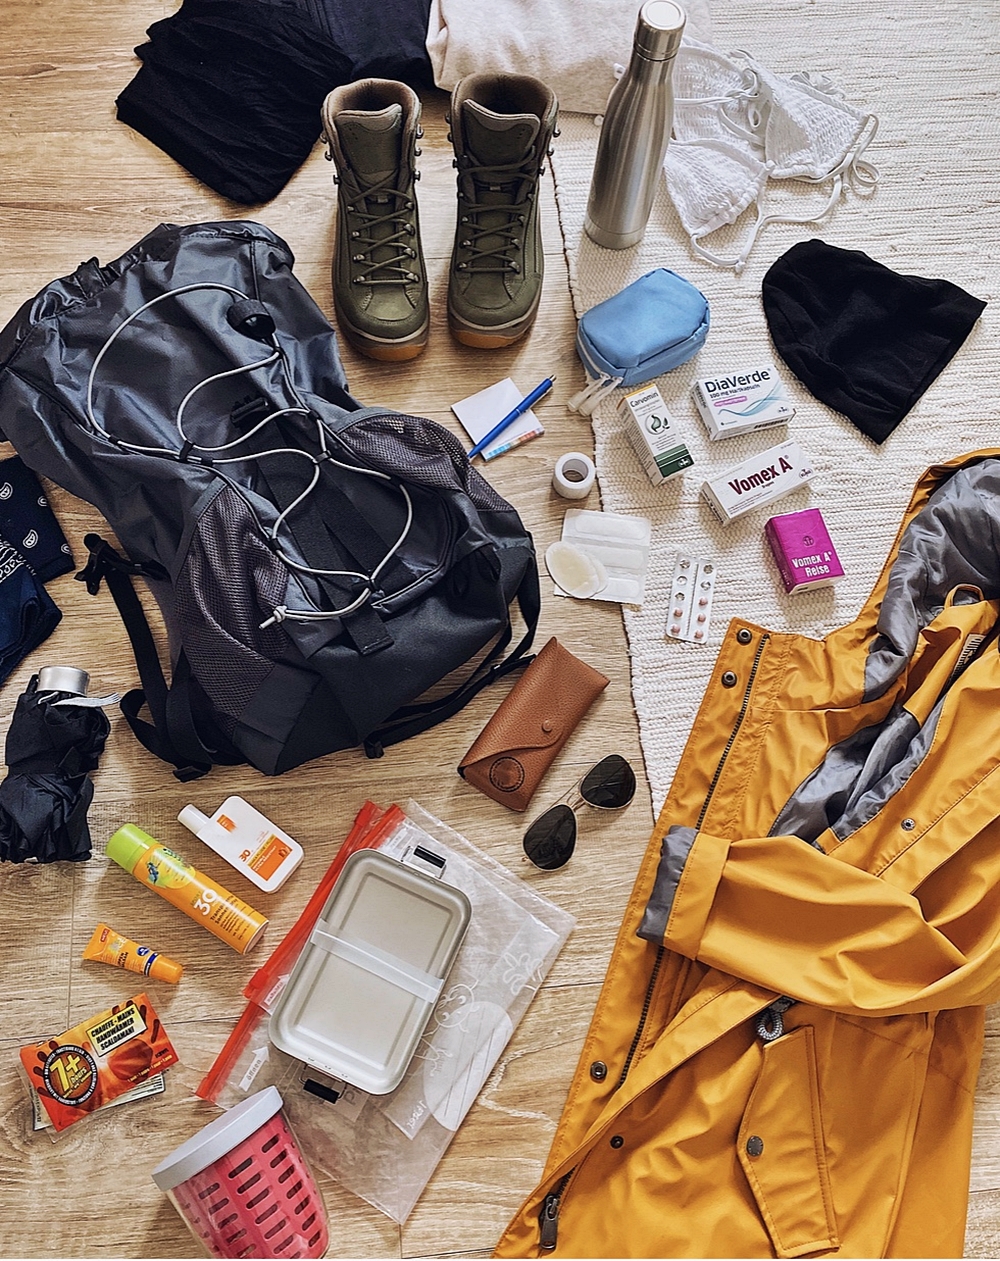 Packliste zum Wandern - das sollte man bei einem Ausflug dabei haben